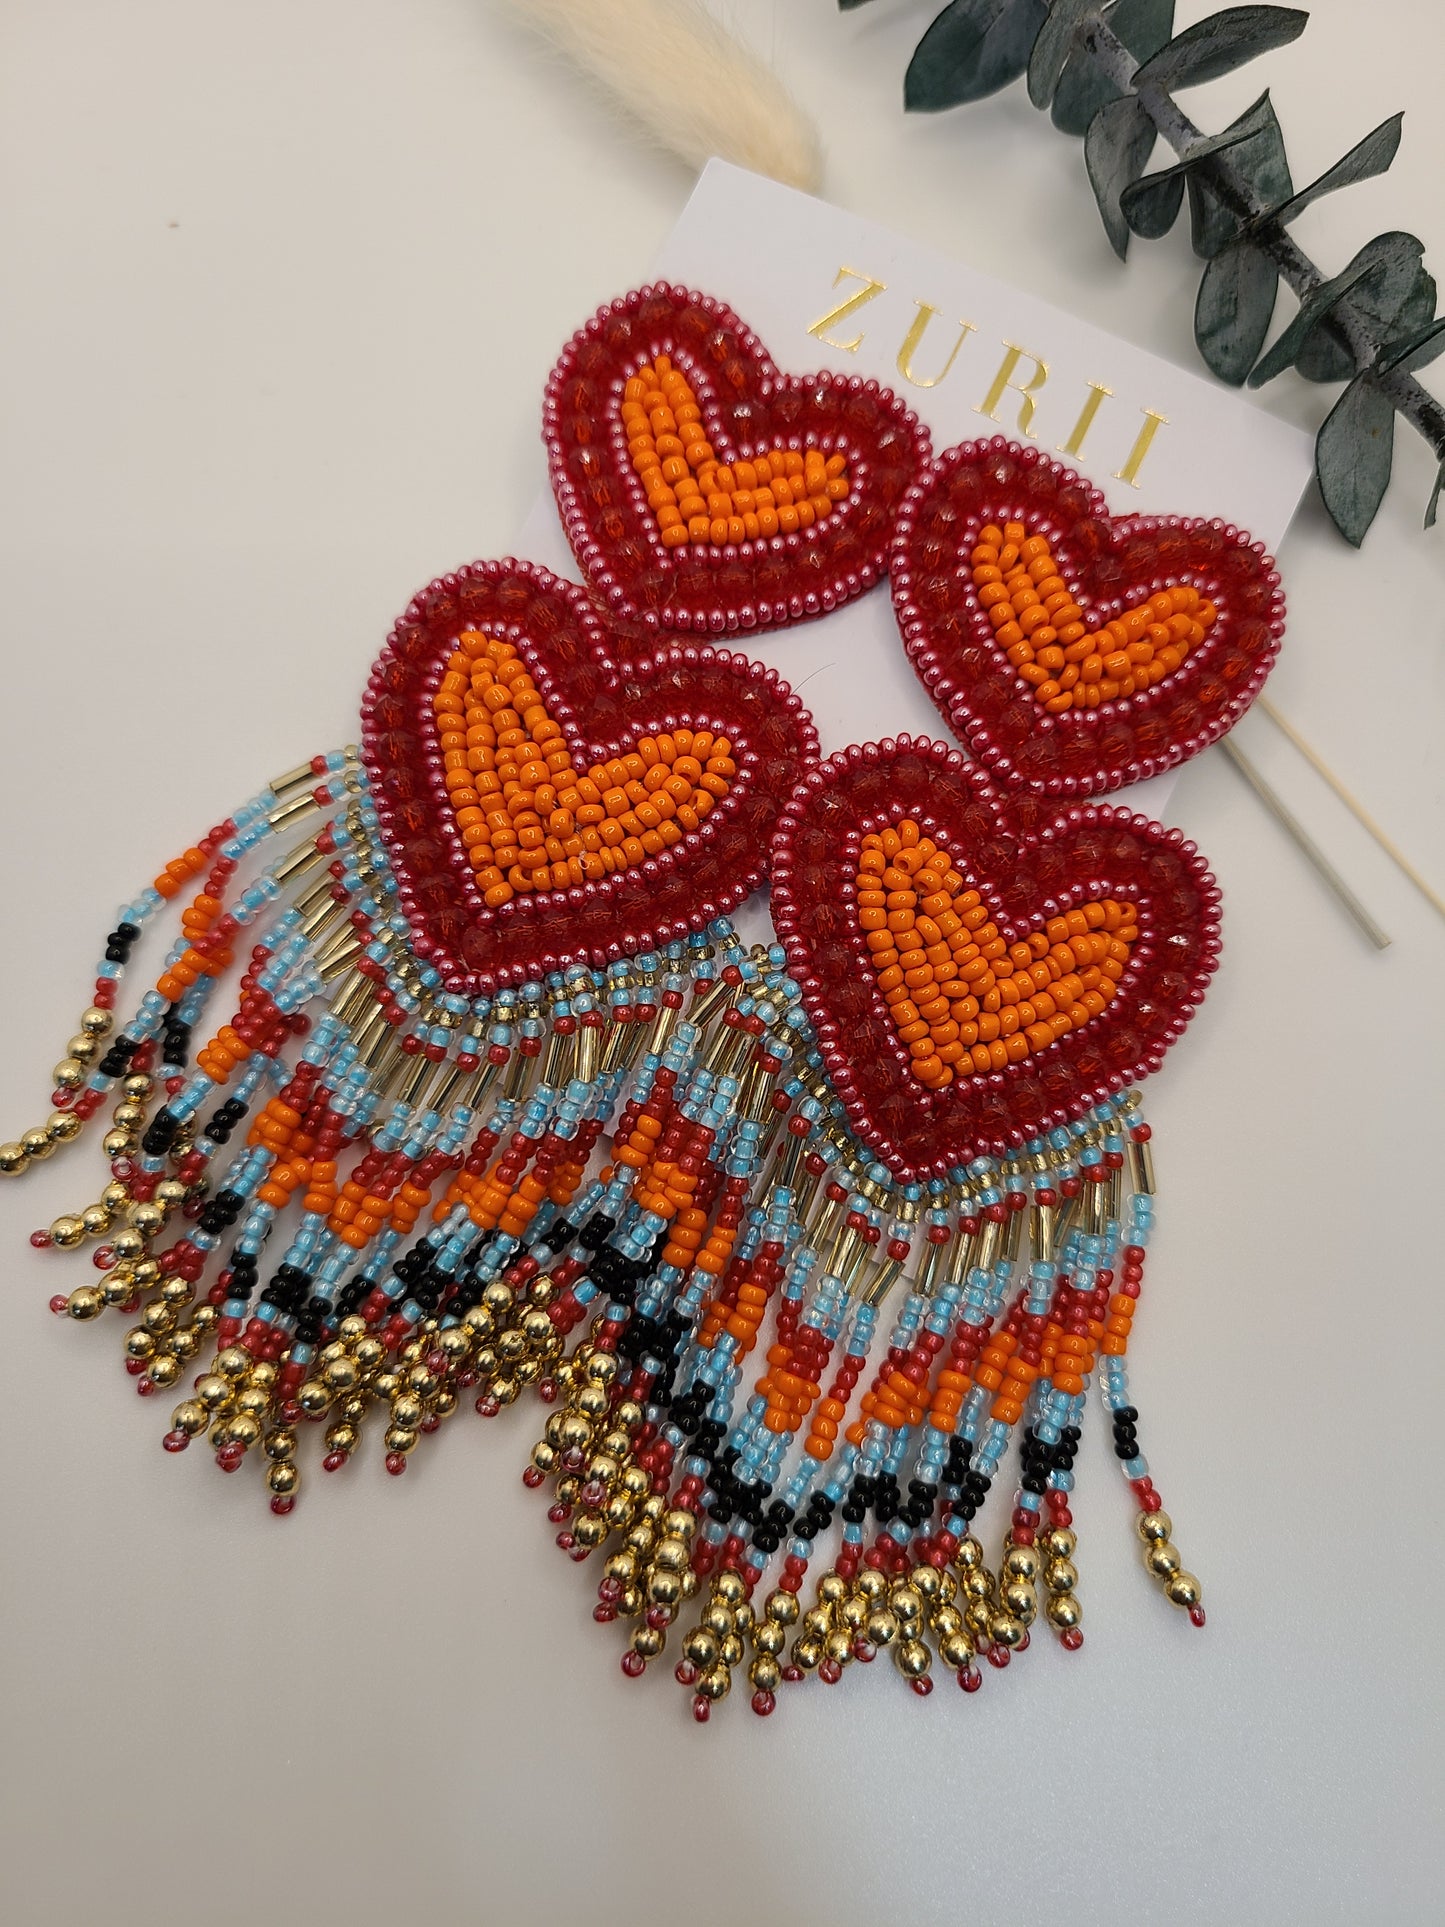 Red Double Heart Earrings